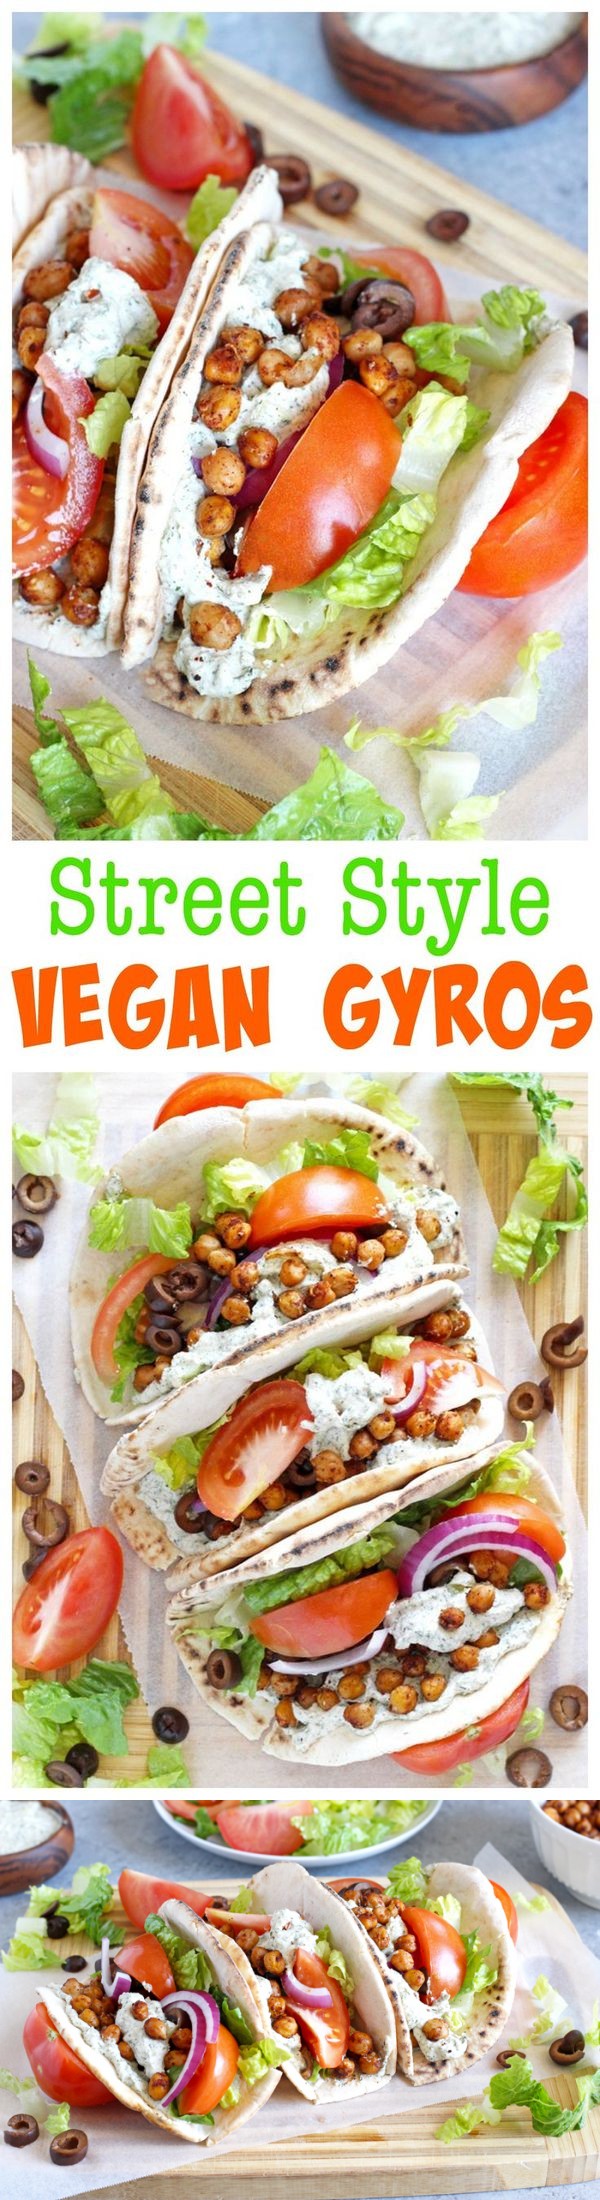 Street Style Vegan Gyros